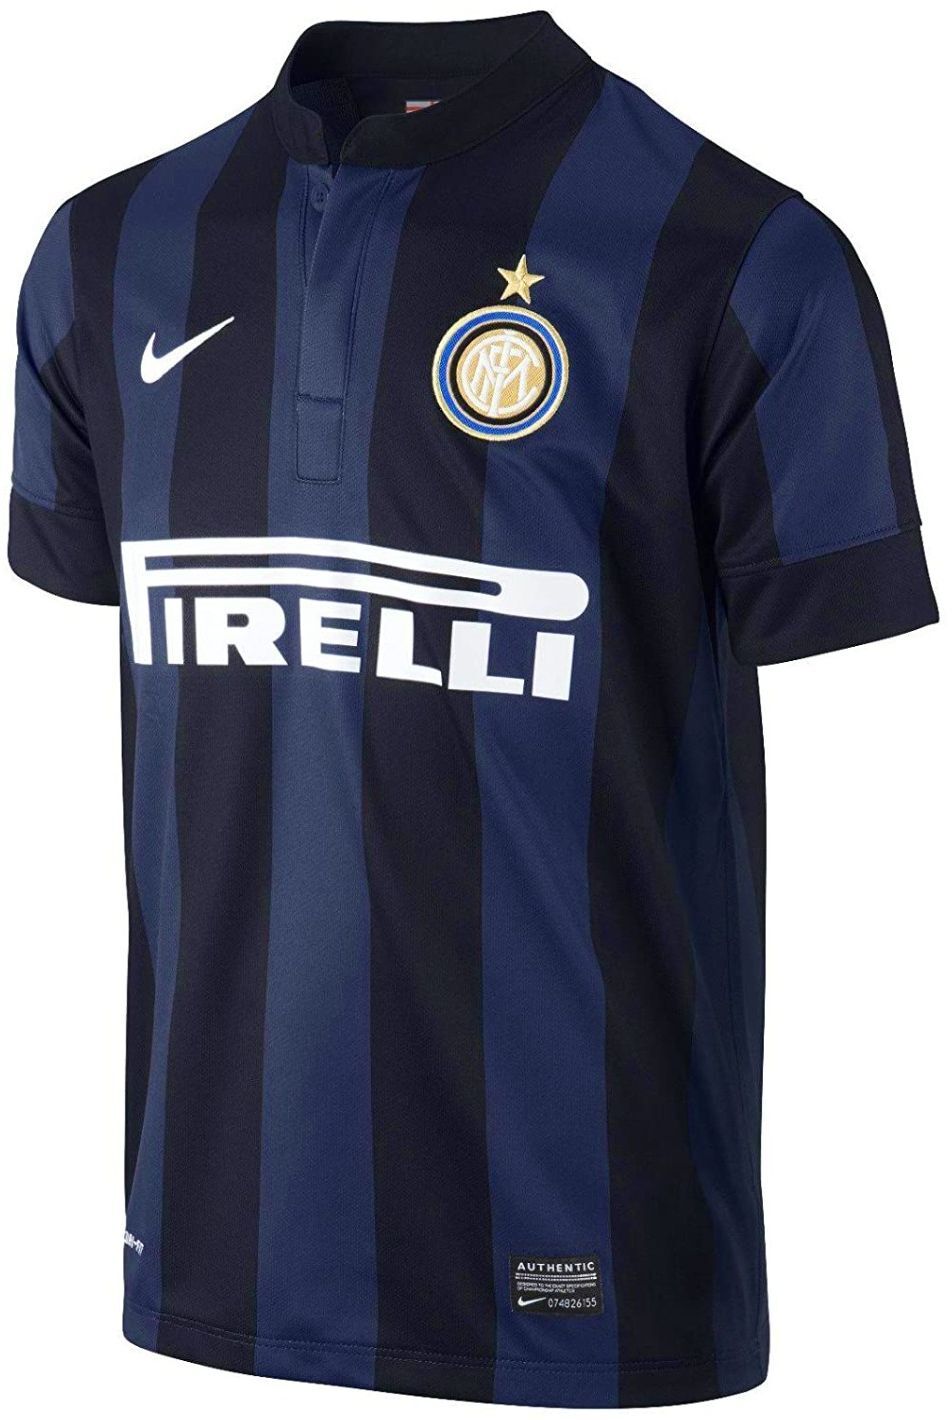 Inter Milan thuisshirt seizoen 2013/2014